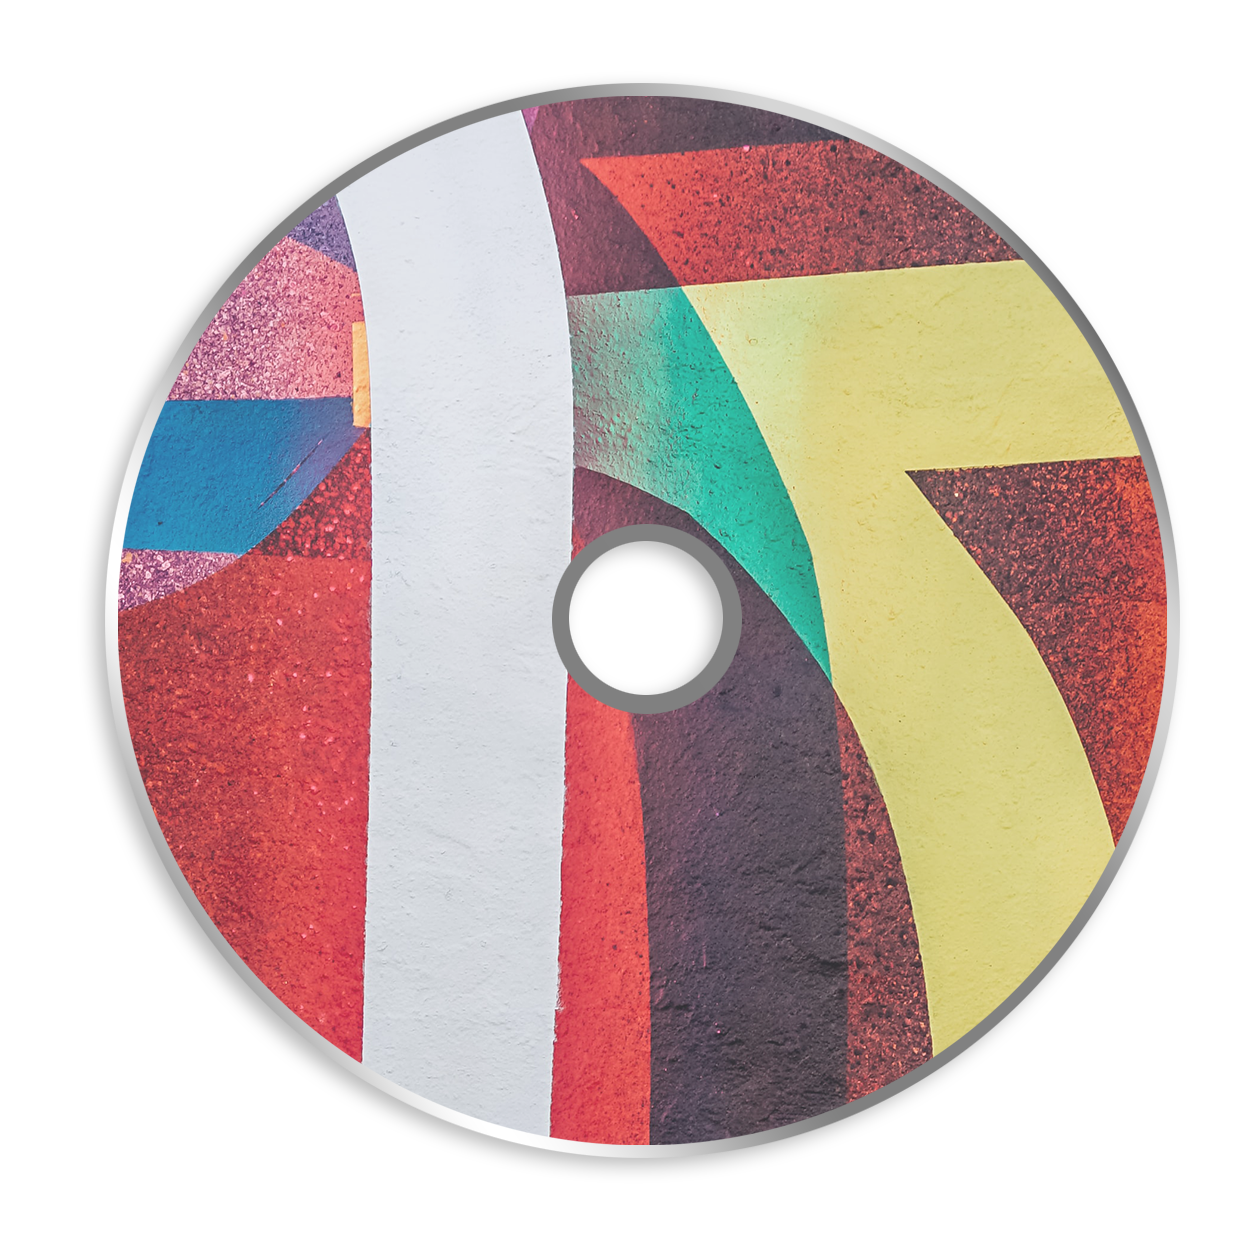 Afbeelding van Blanco CD printen Inkjet 4c + verzegelen